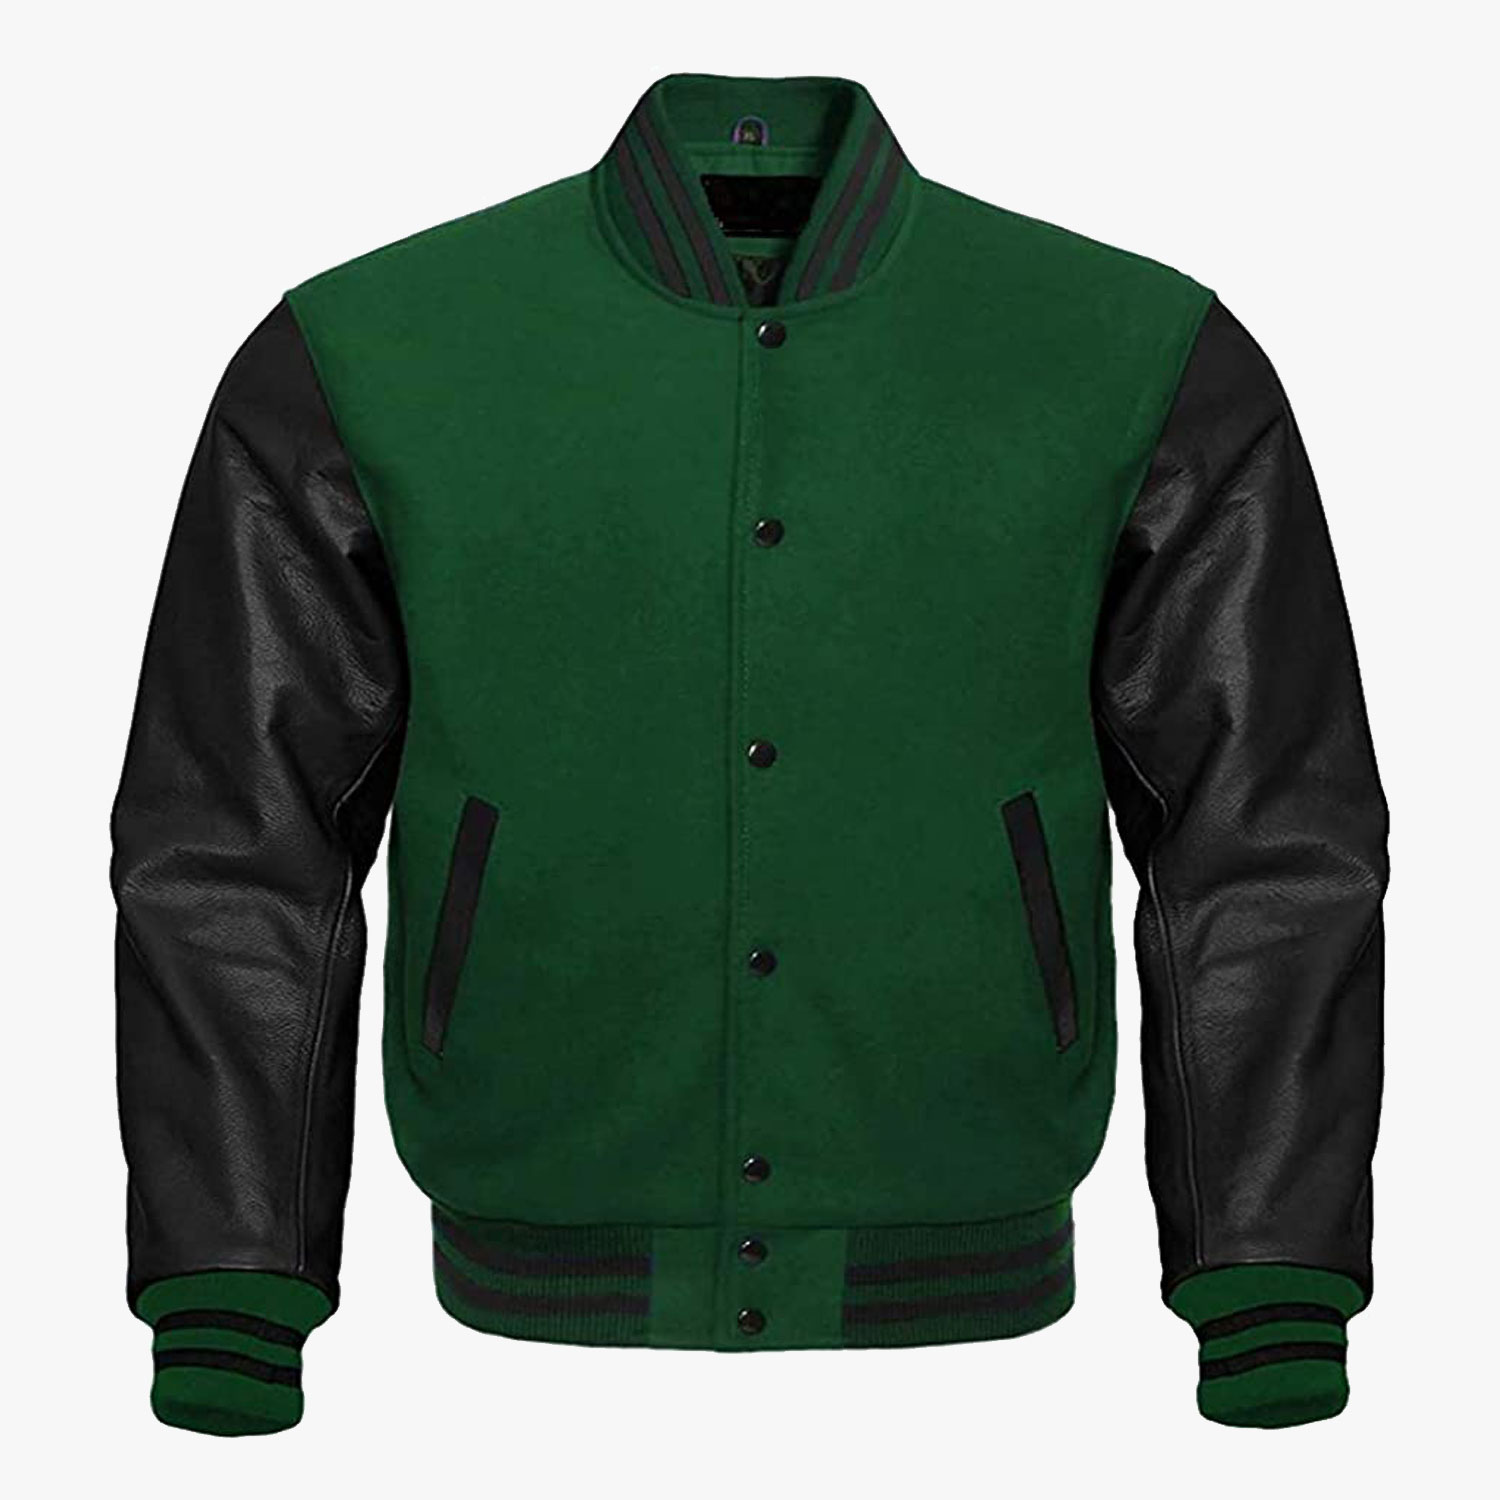 Green And Black leather sleeves Stylish Varsity Baseball Jackets